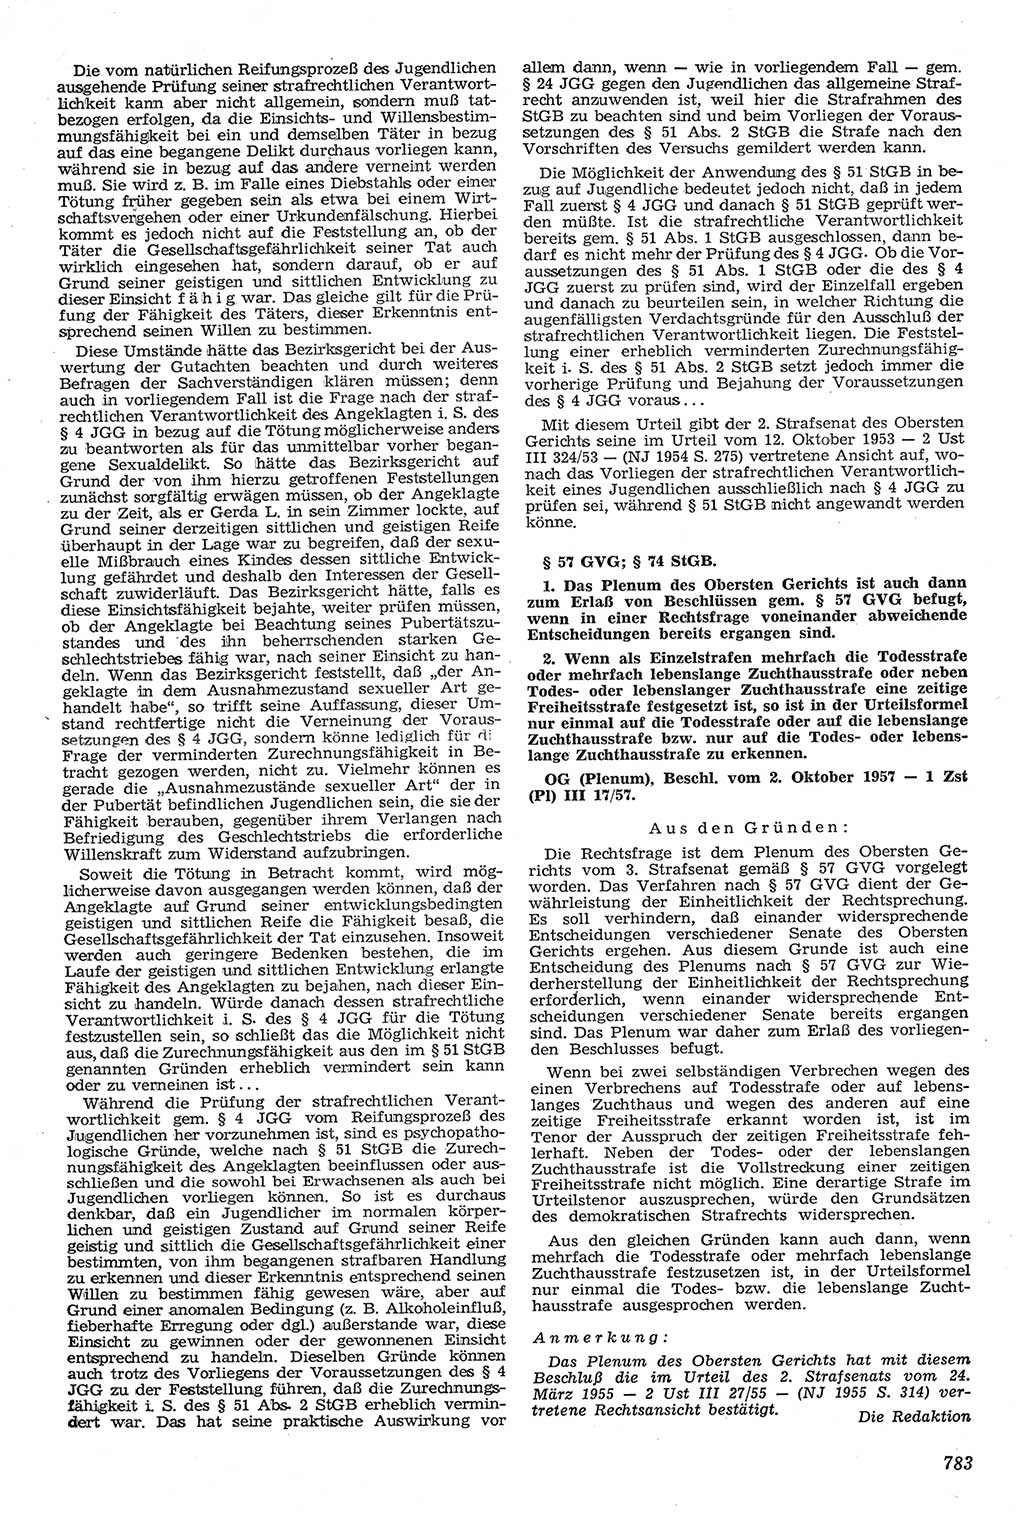 Neue Justiz (NJ), Zeitschrift für Recht und Rechtswissenschaft [Deutsche Demokratische Republik (DDR)], 11. Jahrgang 1957, Seite 783 (NJ DDR 1957, S. 783)